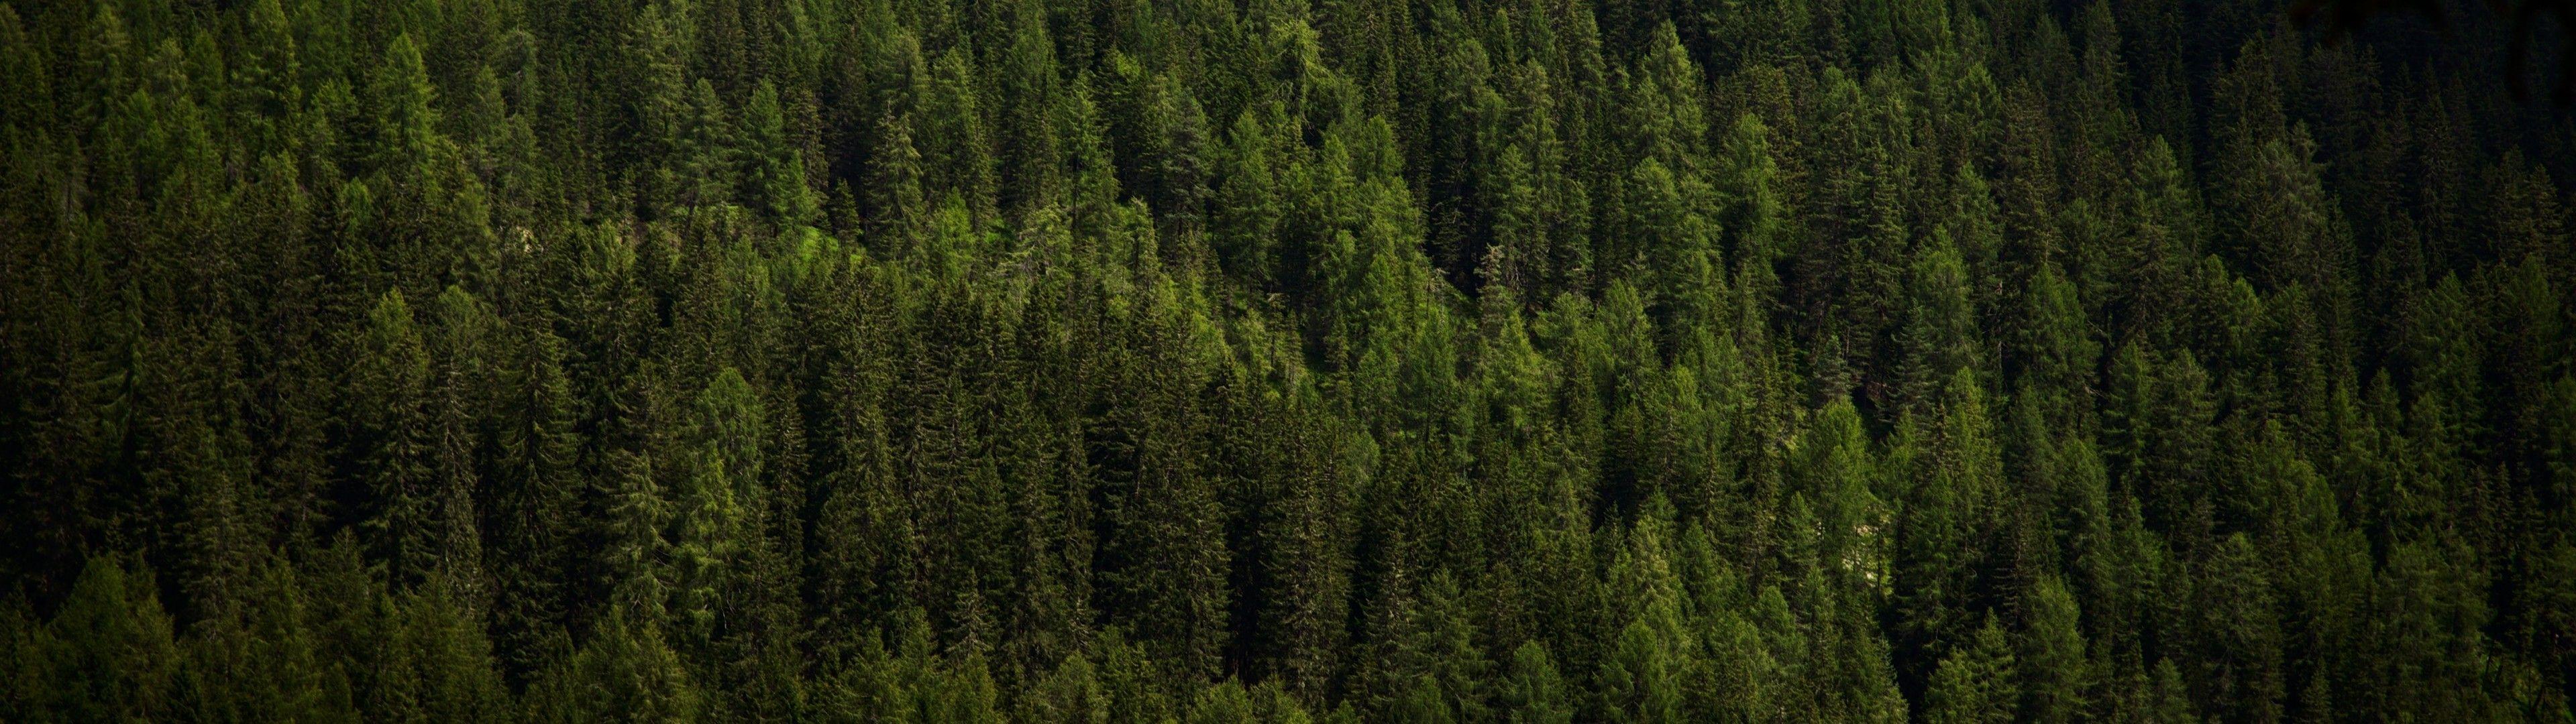 Hình nền rừng: Với tầm nhìn vô tận và vẻ đẹp tự nhiên, rừng là một trong những chủ đề được ưa chuộng trong các hình nền. Bạn muốn có một tấm hình nền rừng độc đáo và ấn tượng? Tại sao không xem qua bộ sưu tập hình ảnh rừng mà chúng tôi thu thập và chia sẻ?